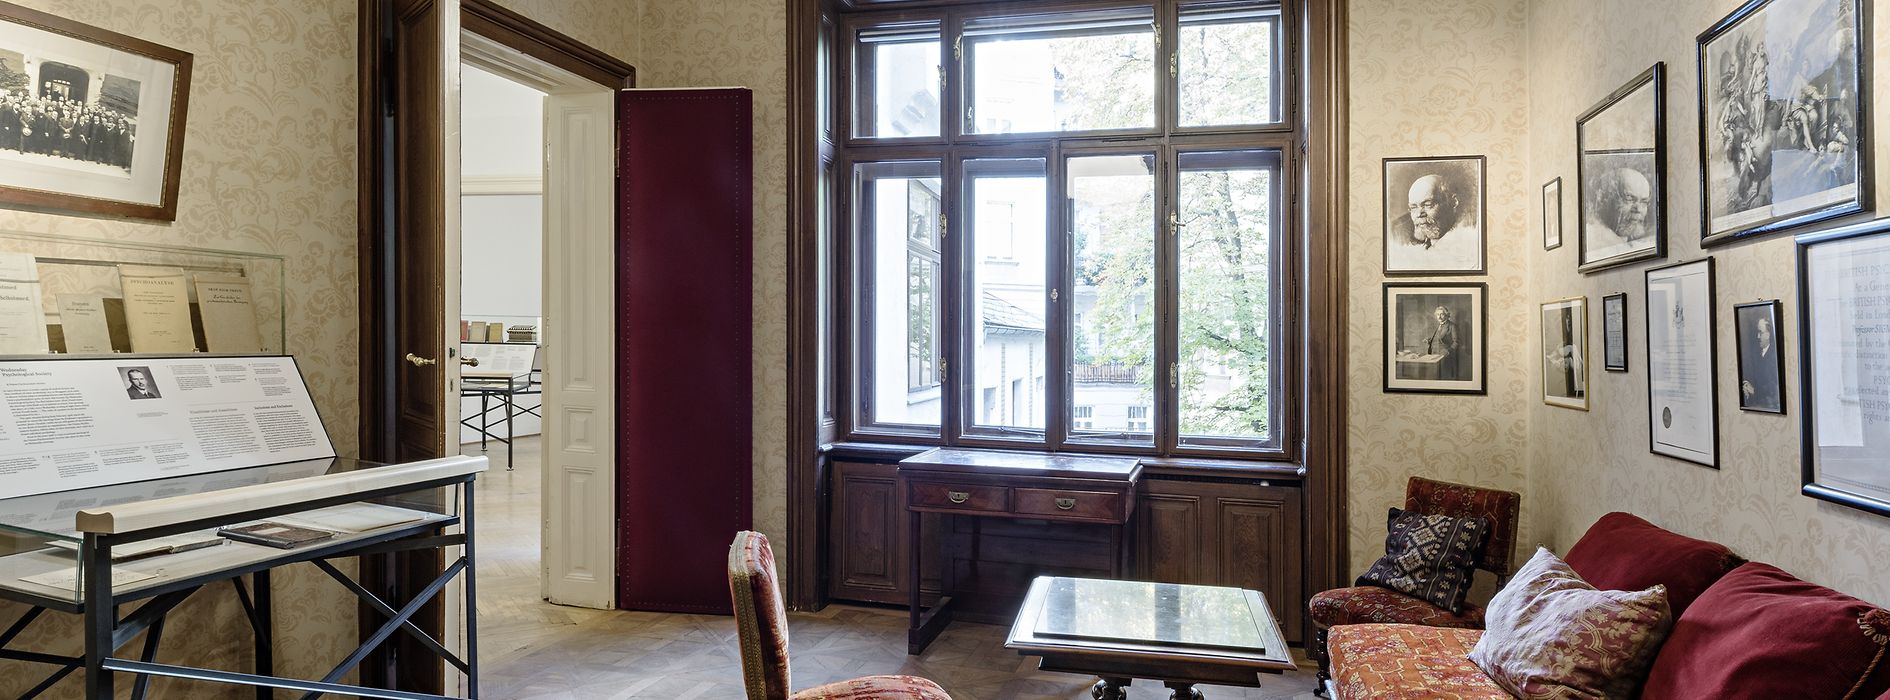 Sala de aşteptare cu mobilierul original în Muzeul Sigmund Freud 